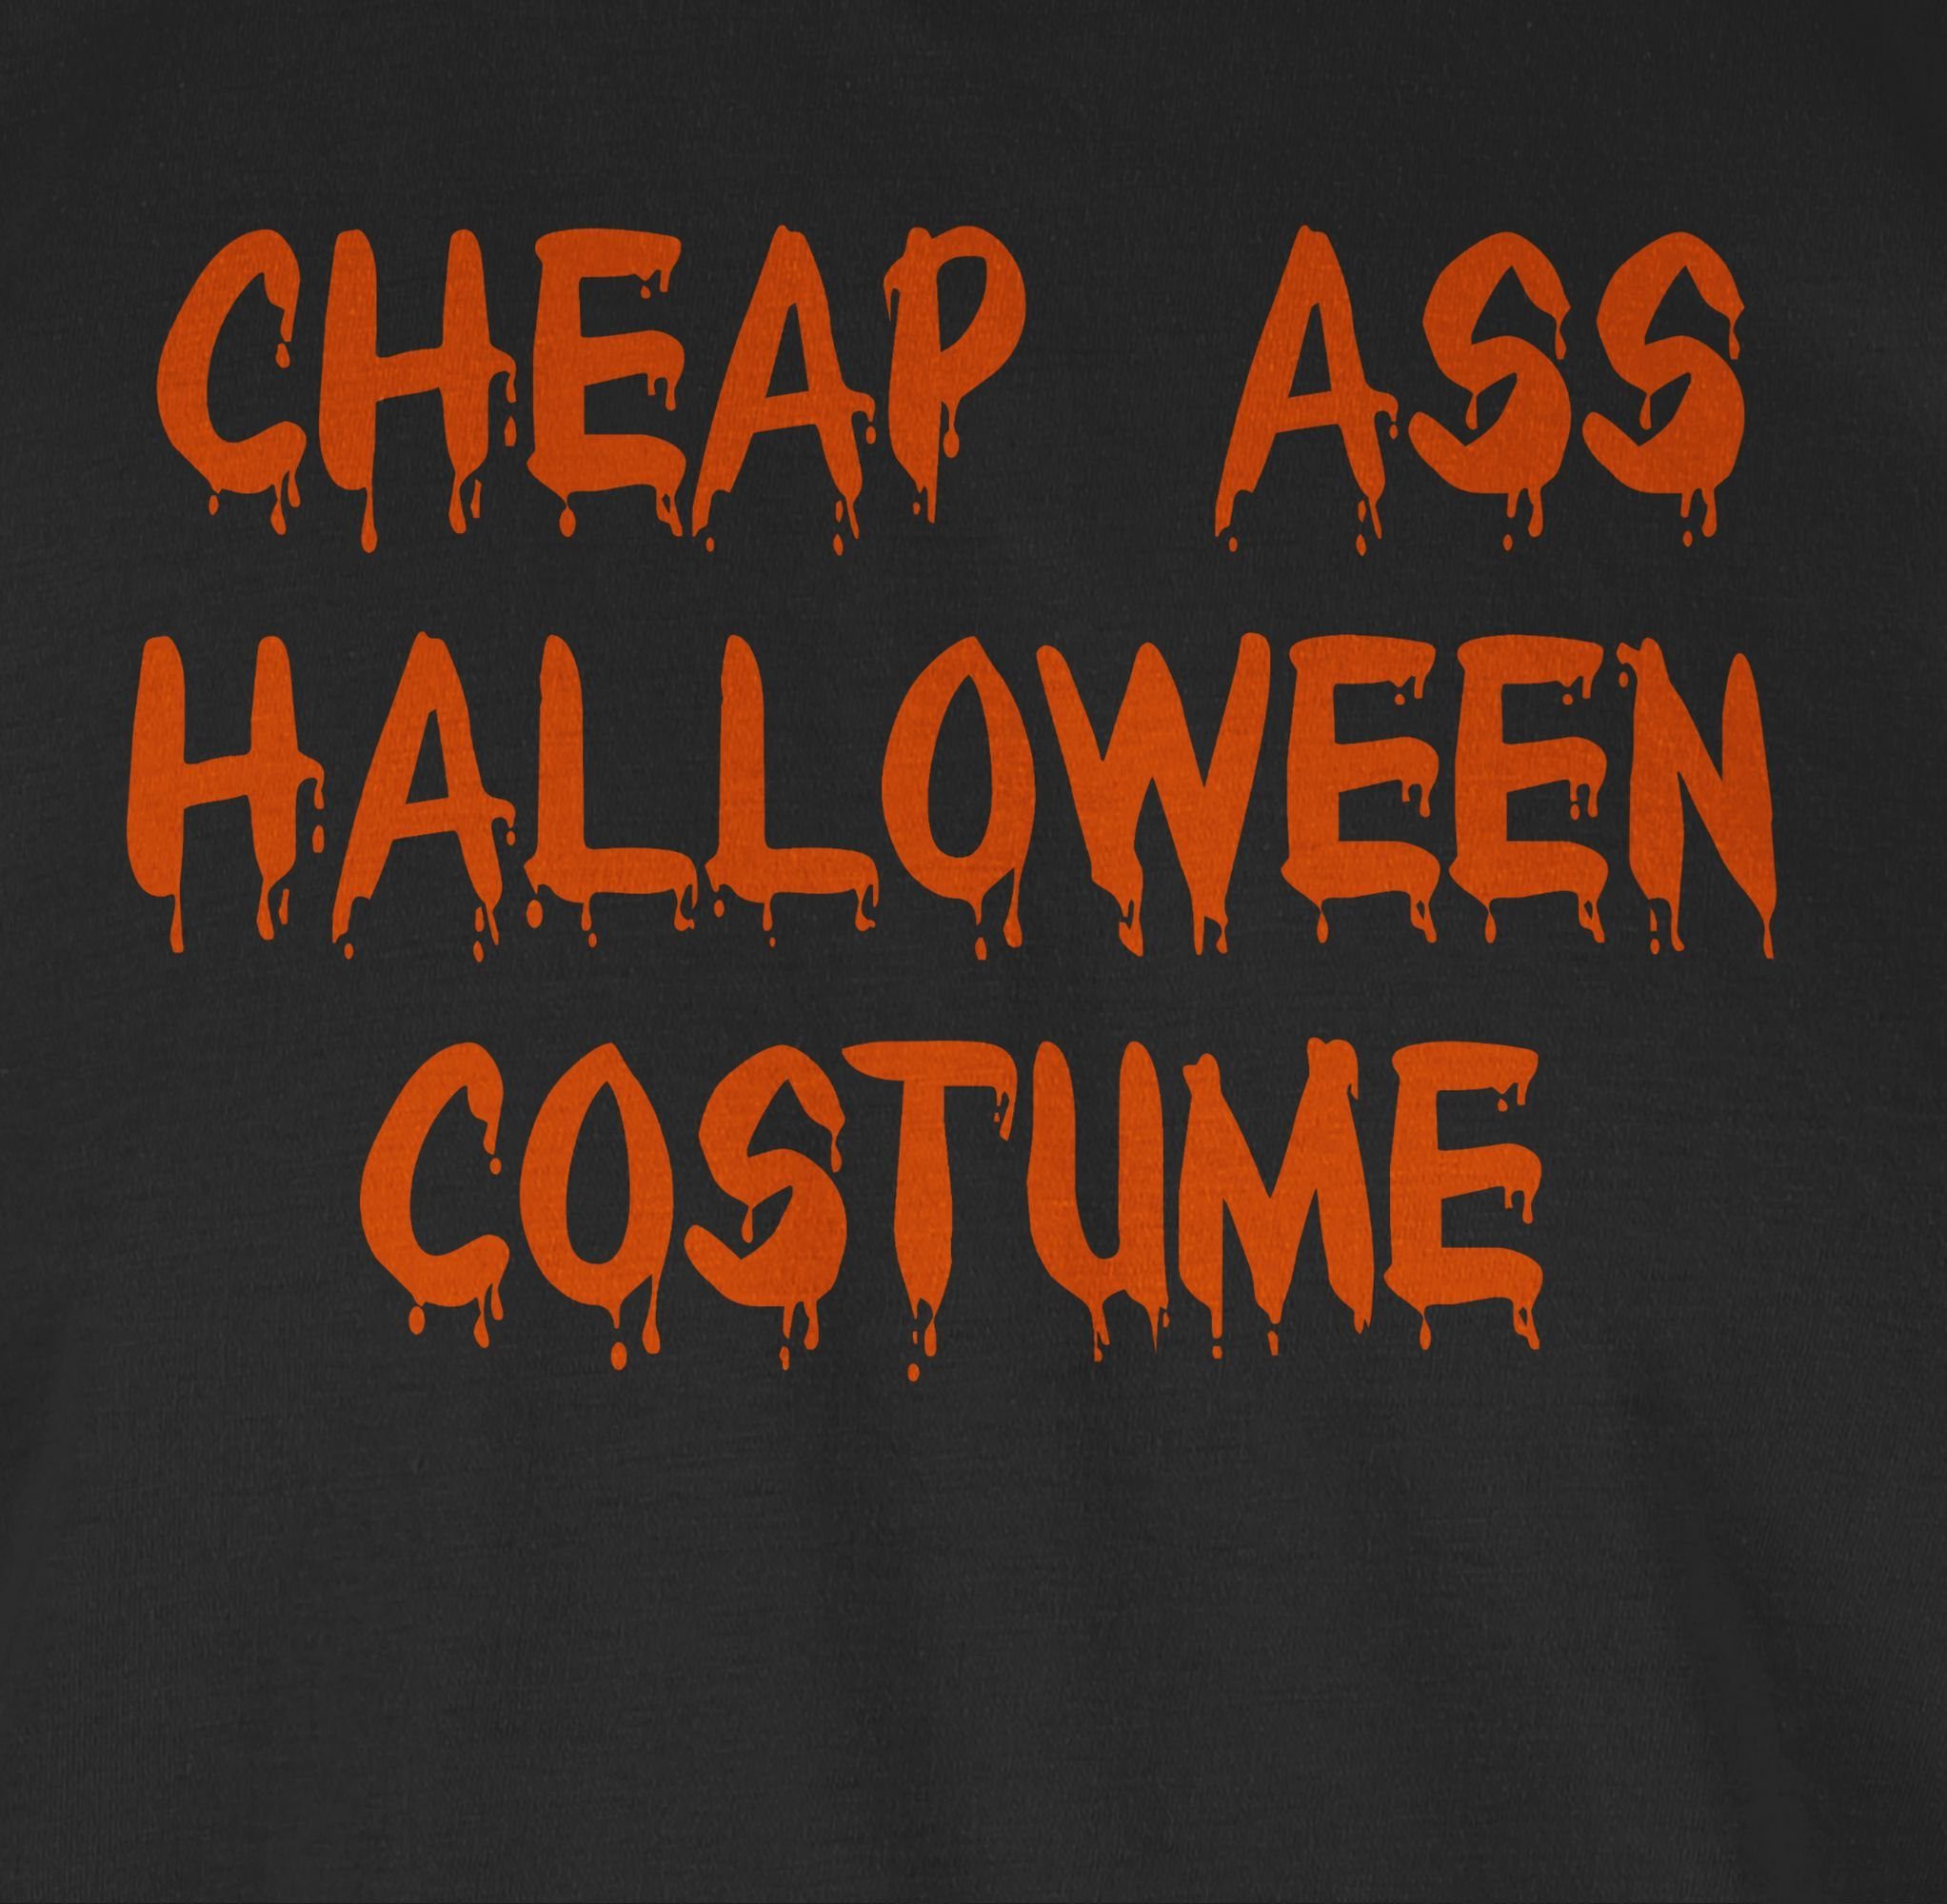 Shirtracer T-Shirt Holy Halloween Costume Halloween Schwarz Kostüm 02 Outfit